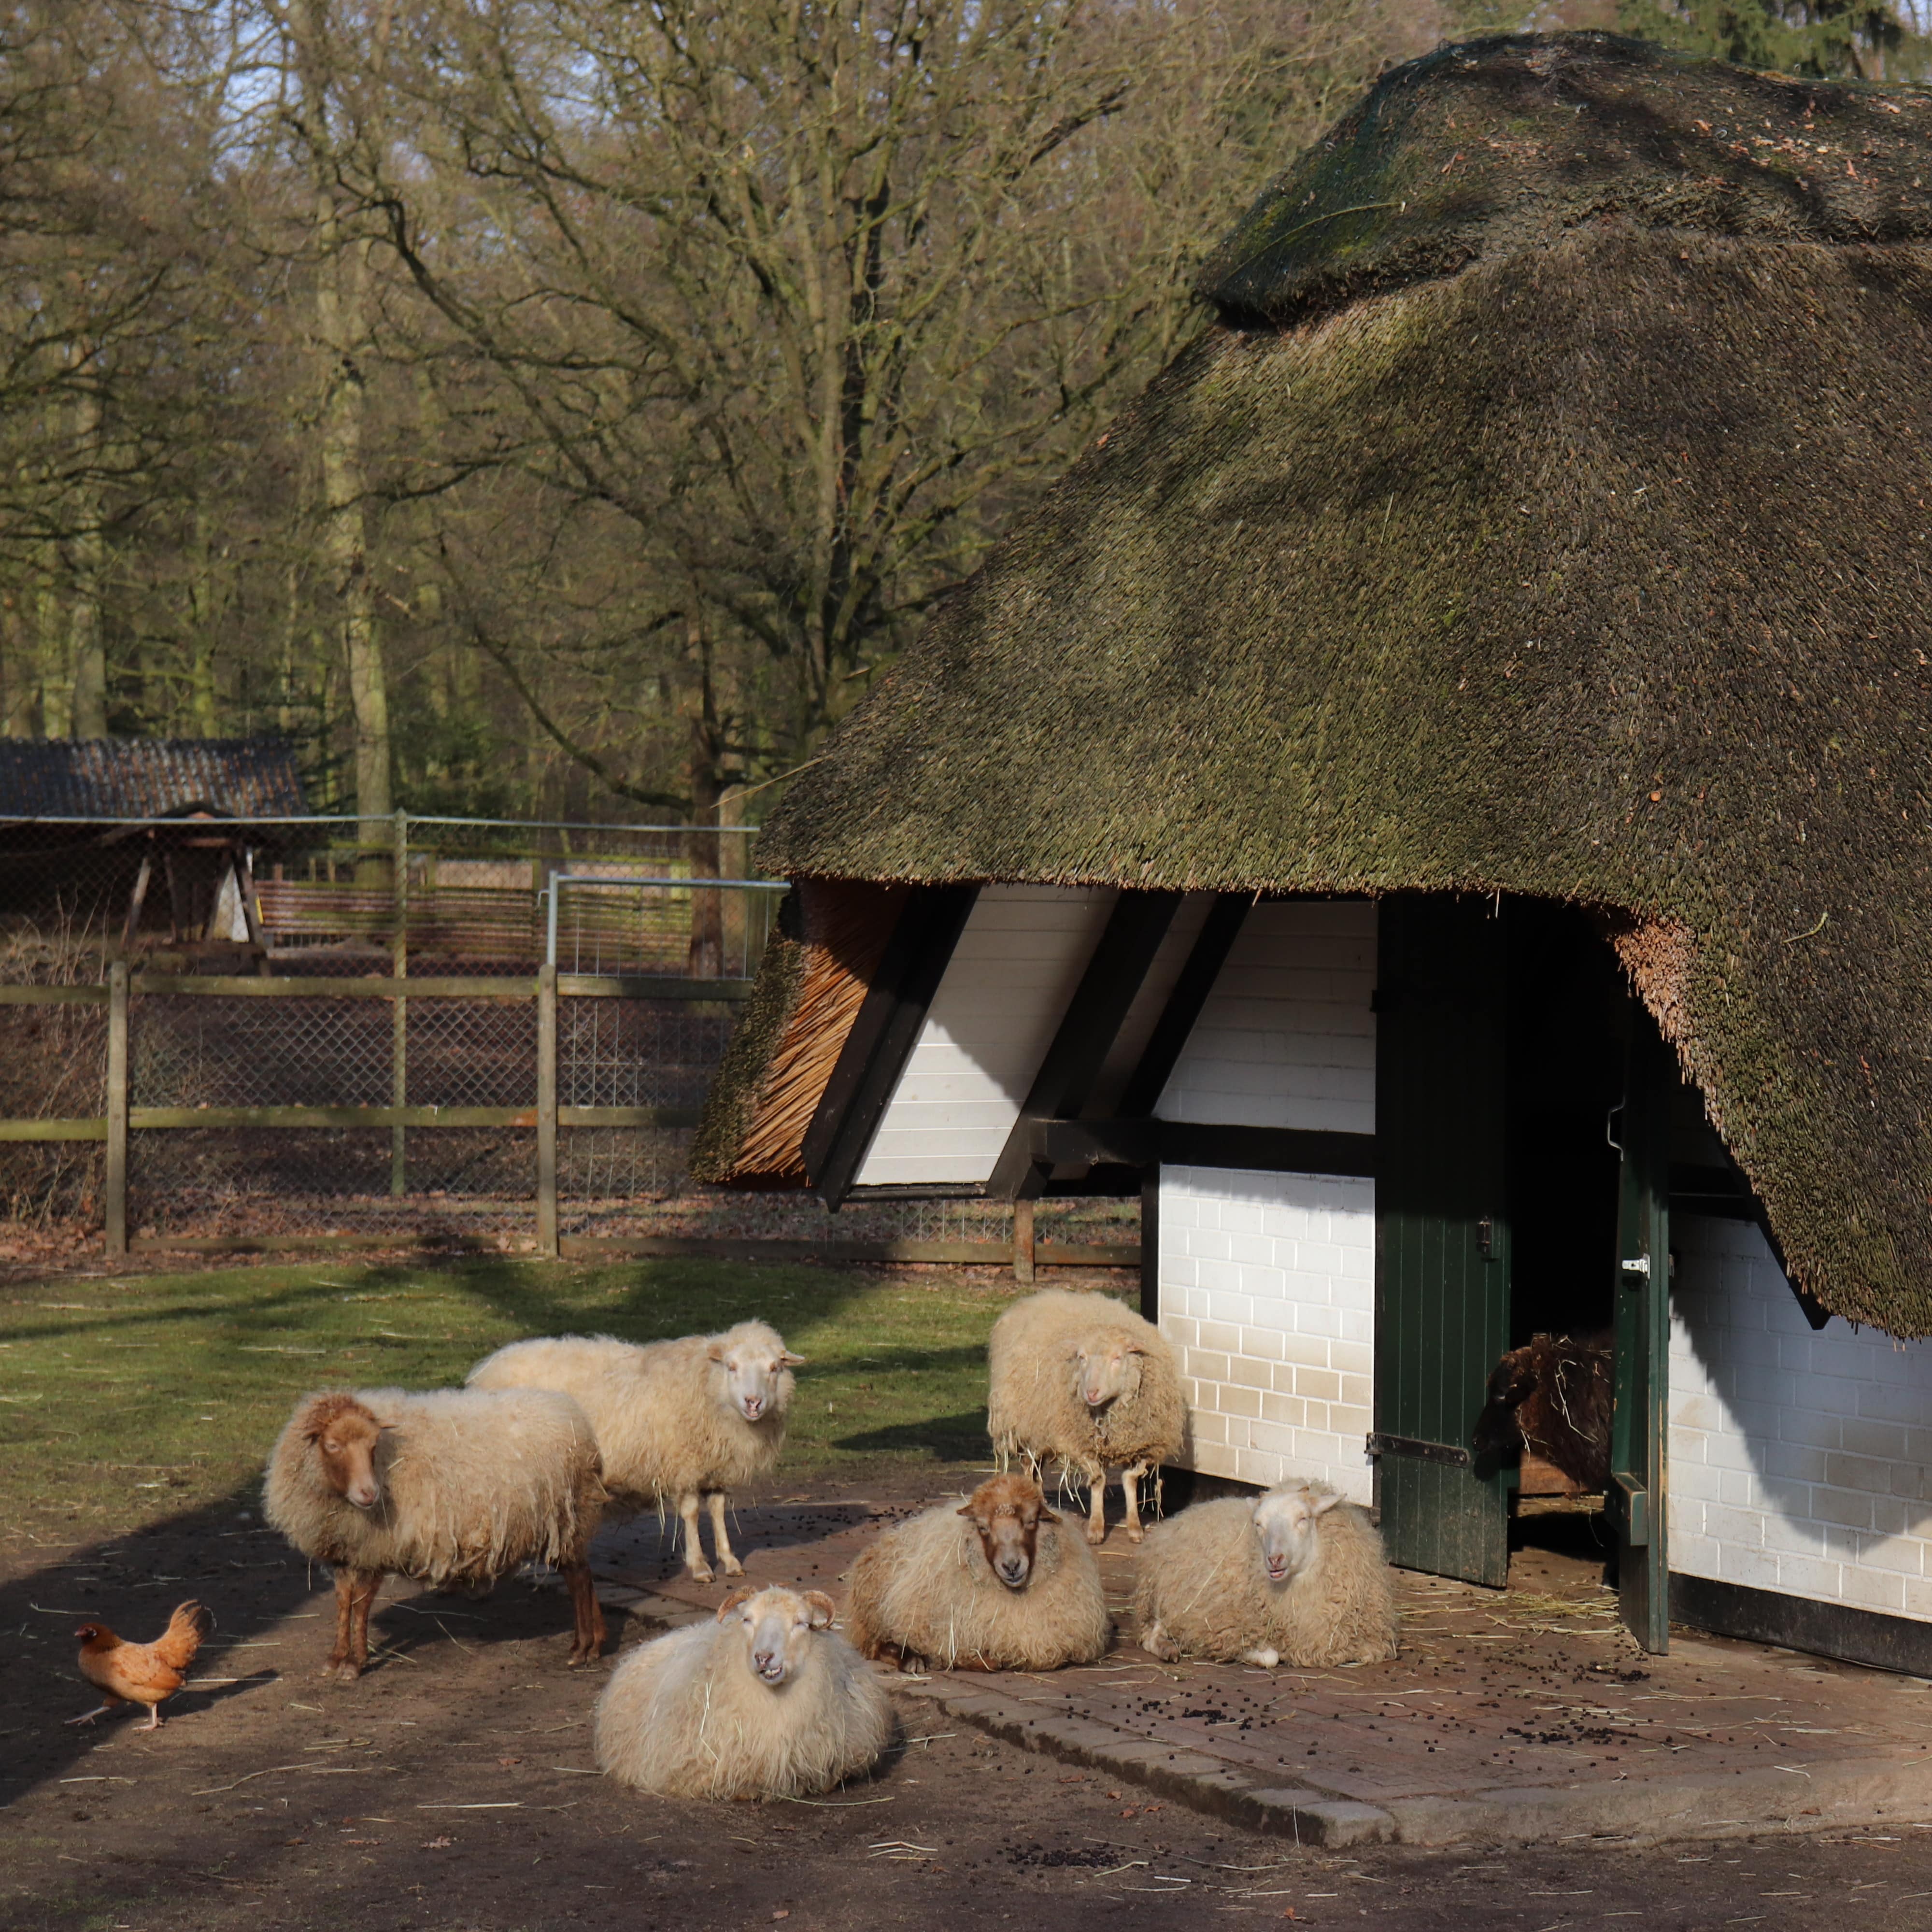 Ein Stall mit Reetdach, davor einige Schafe und ein Huhn.